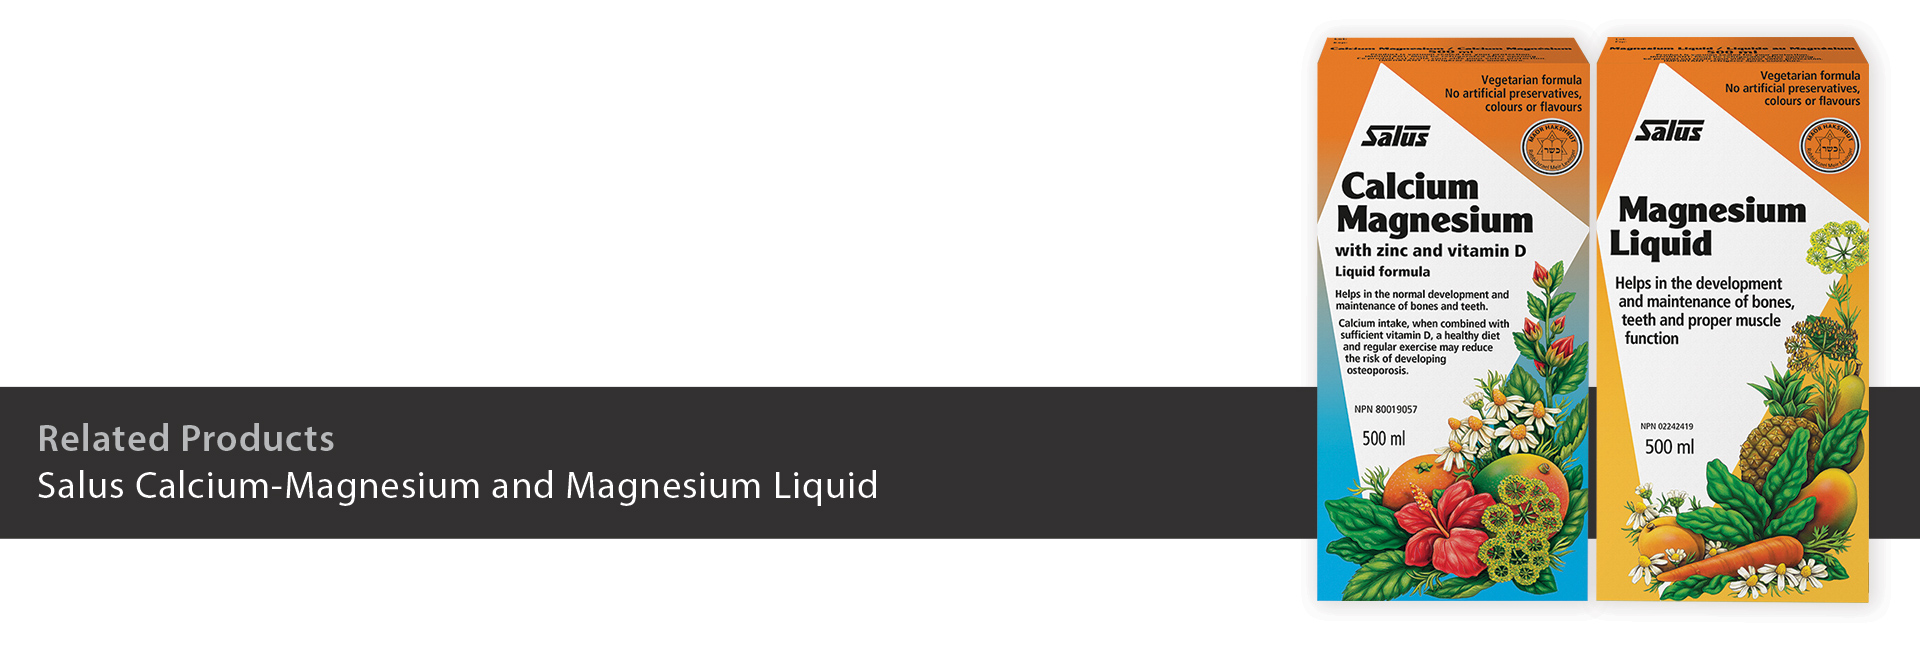 Salus Calcium-Magnesium and Magnesium Liquid